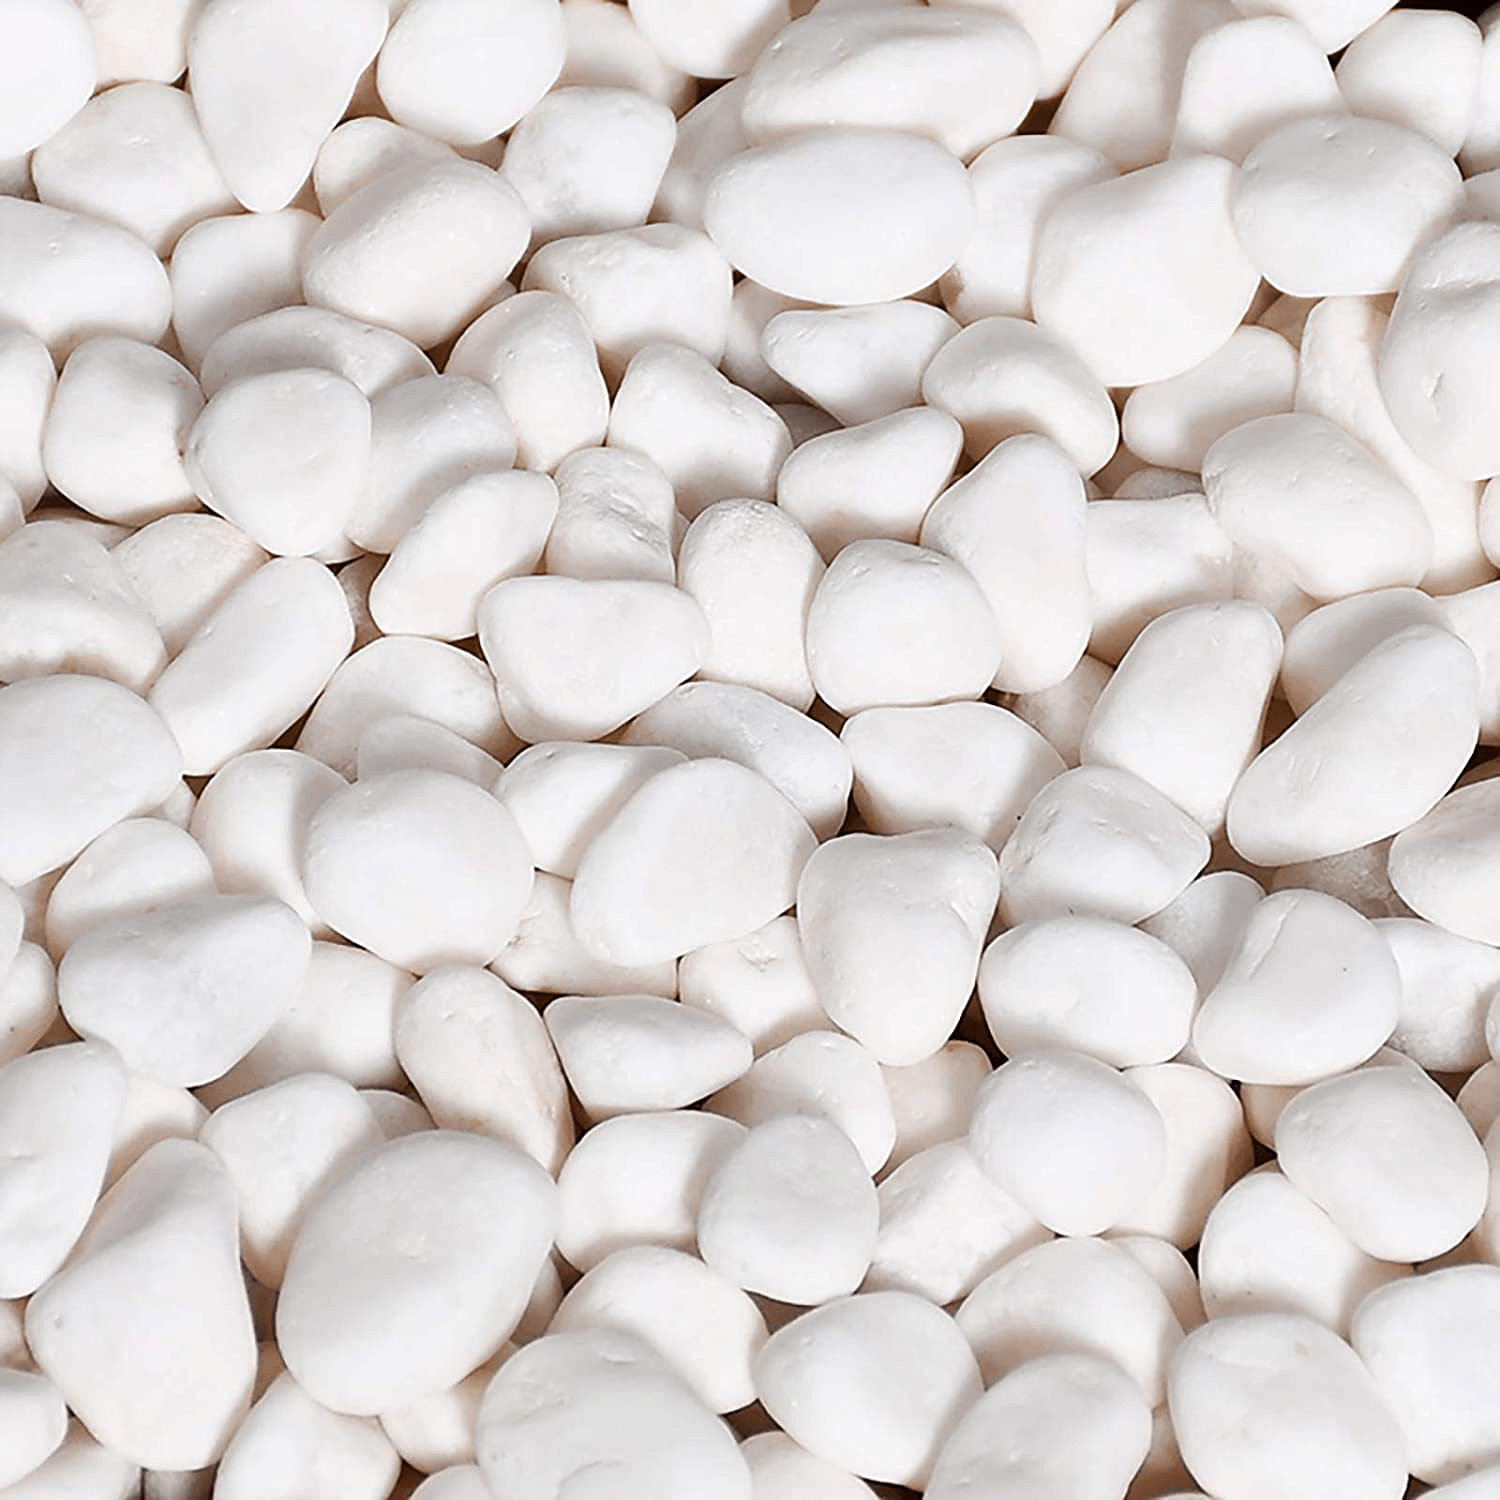 WUWEOT 6-Lb Natural Decorative Bean Pebbles, 0.2" Gravel Rocks for Plants, Succulents, Vases, Aquariums and Terrariums (White)